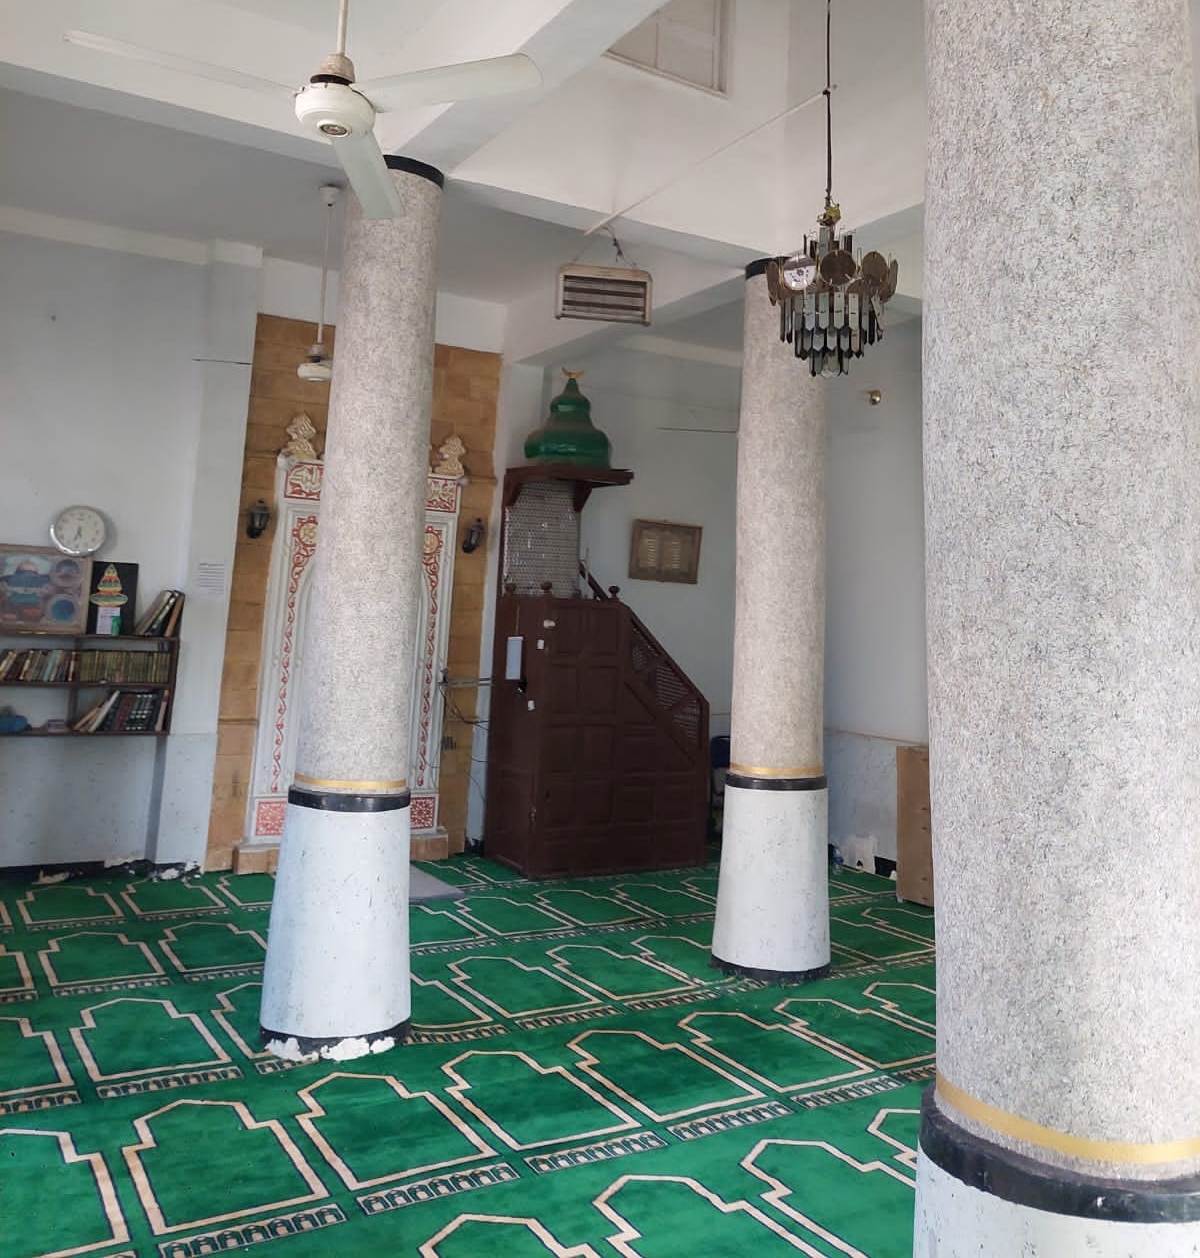 عمليات فرش مسجد البخايته بالمريس بالطود